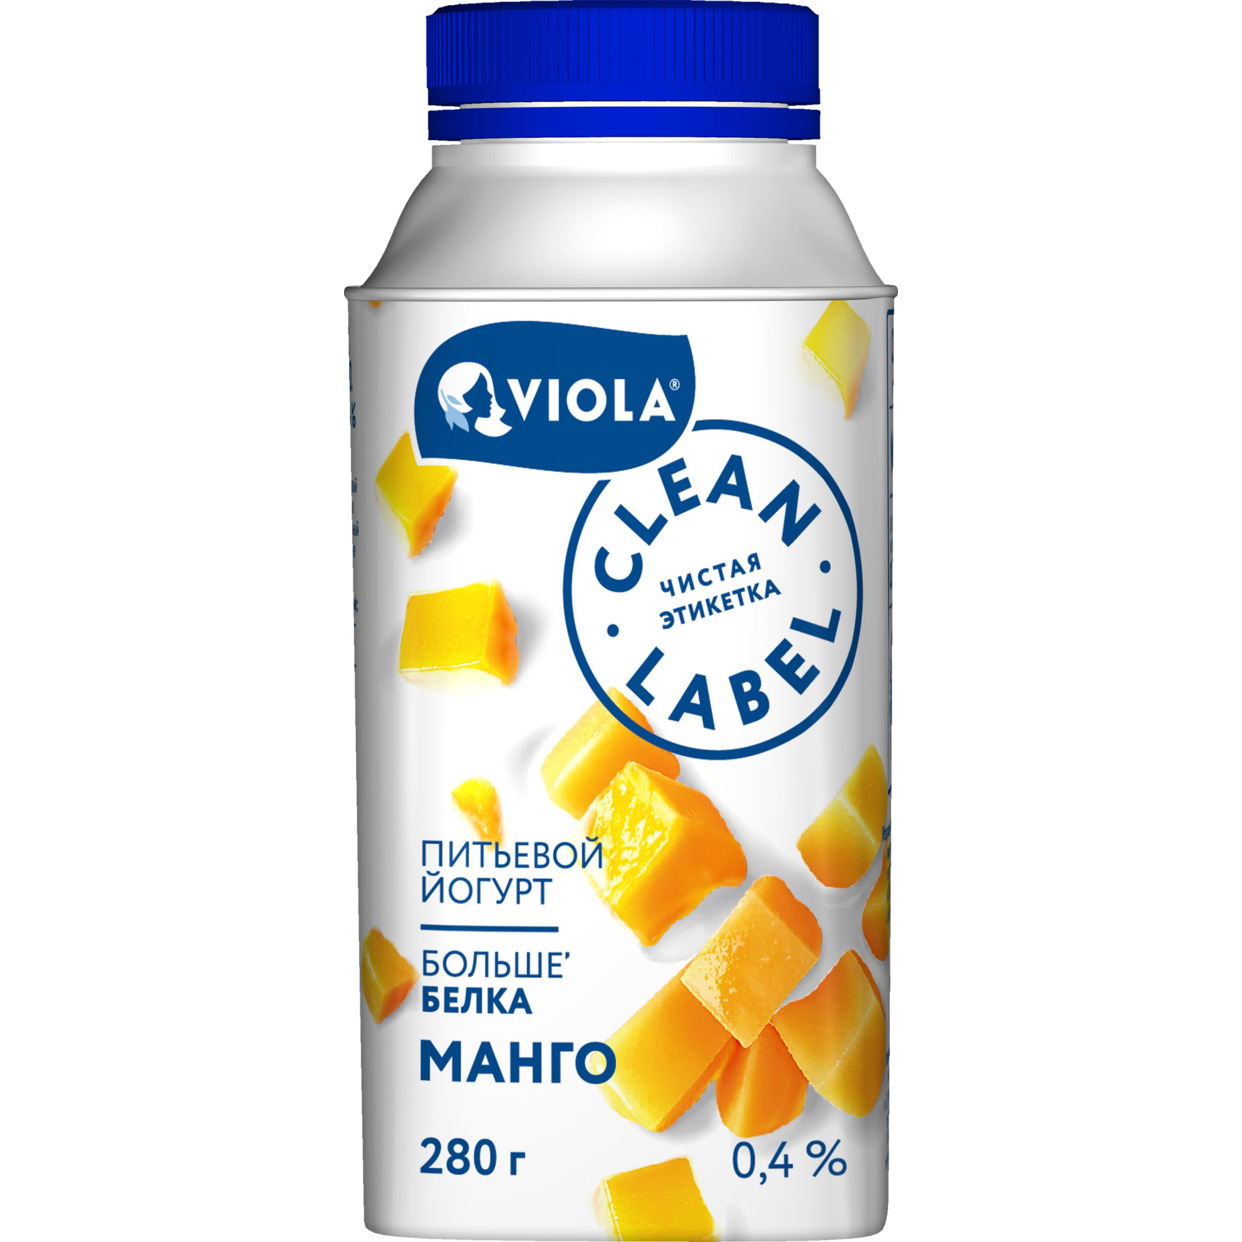 БЗМЖ Йогурт питьевой Clean Label с манго Массовая доля жира 0,4% 280г